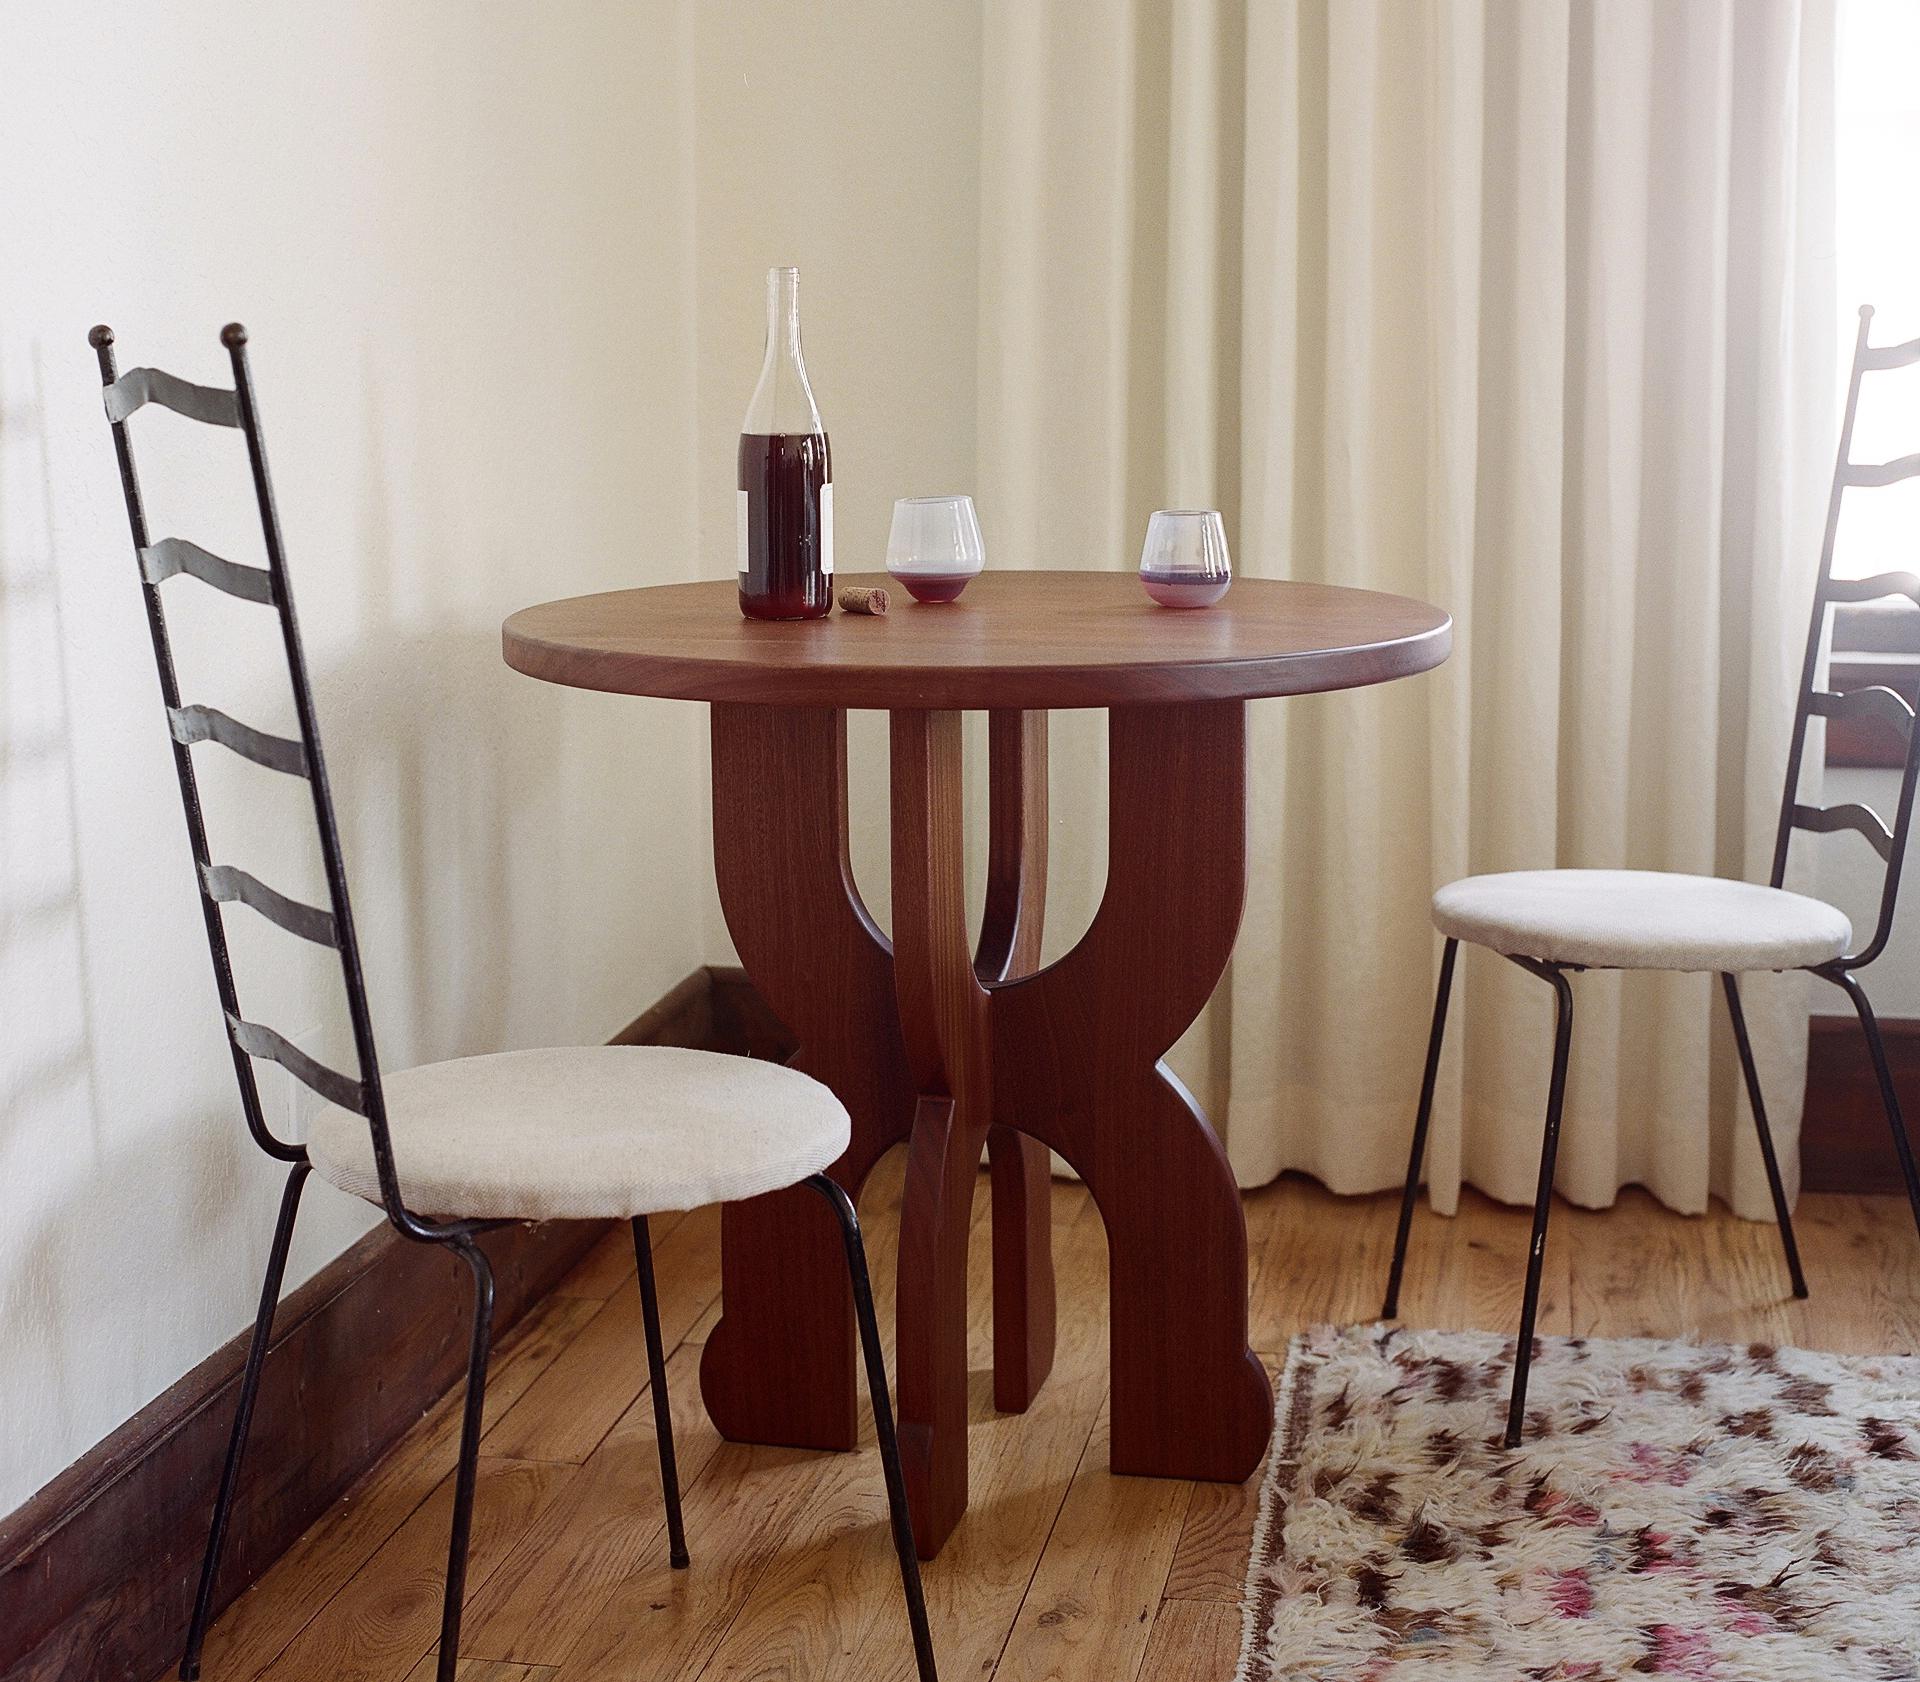 Avec des courbes douces et une silhouette ludique, la petite table à vin Table est un endroit parfait pour s'asseoir et boire un verre de vin. Sa polyvalence lui permet d'être utilisée comme table d'entrée ou comme table d'appoint surdimensionnée